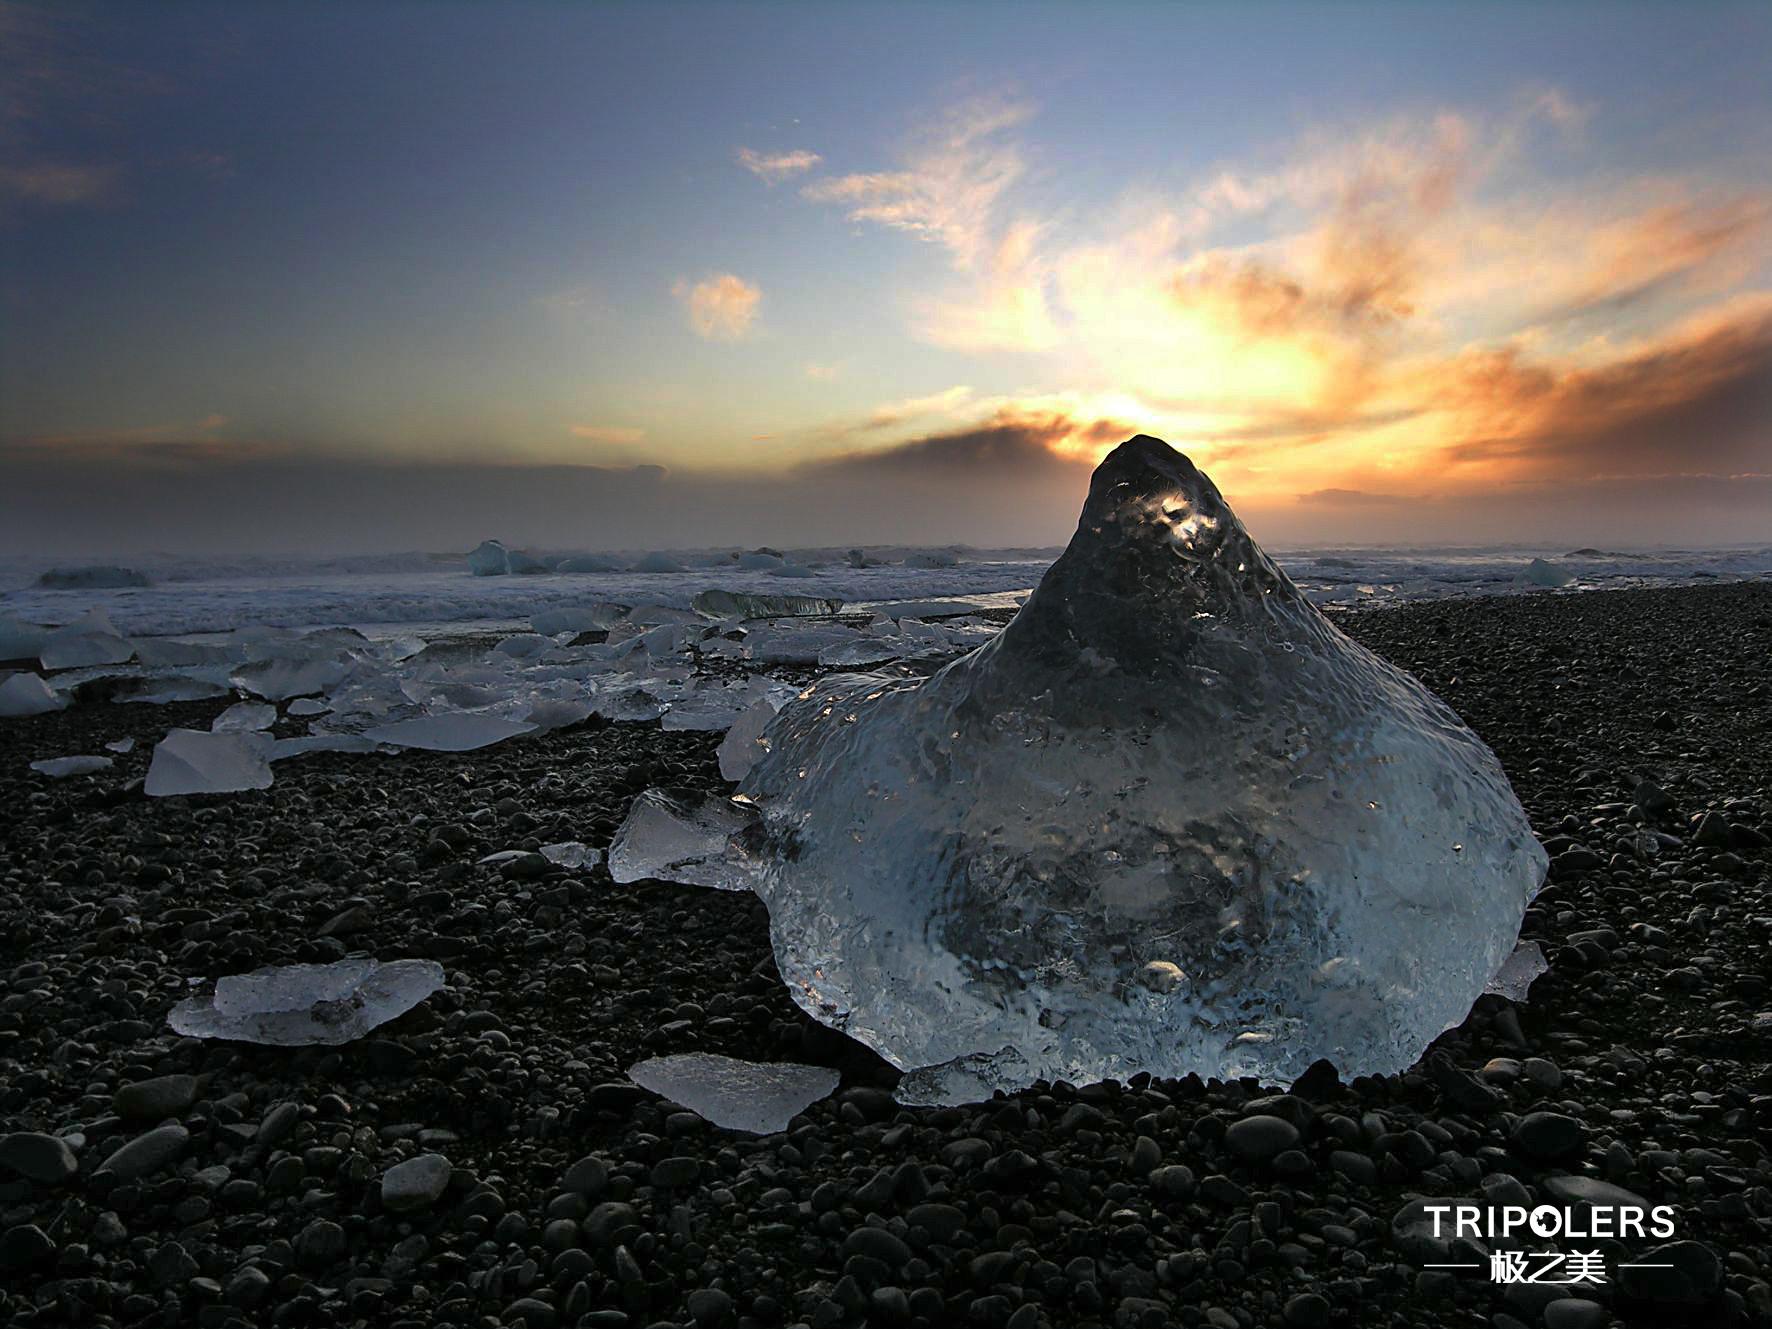 神奇的聚划算,永恒的极之美|冰岛|神奇|旅行